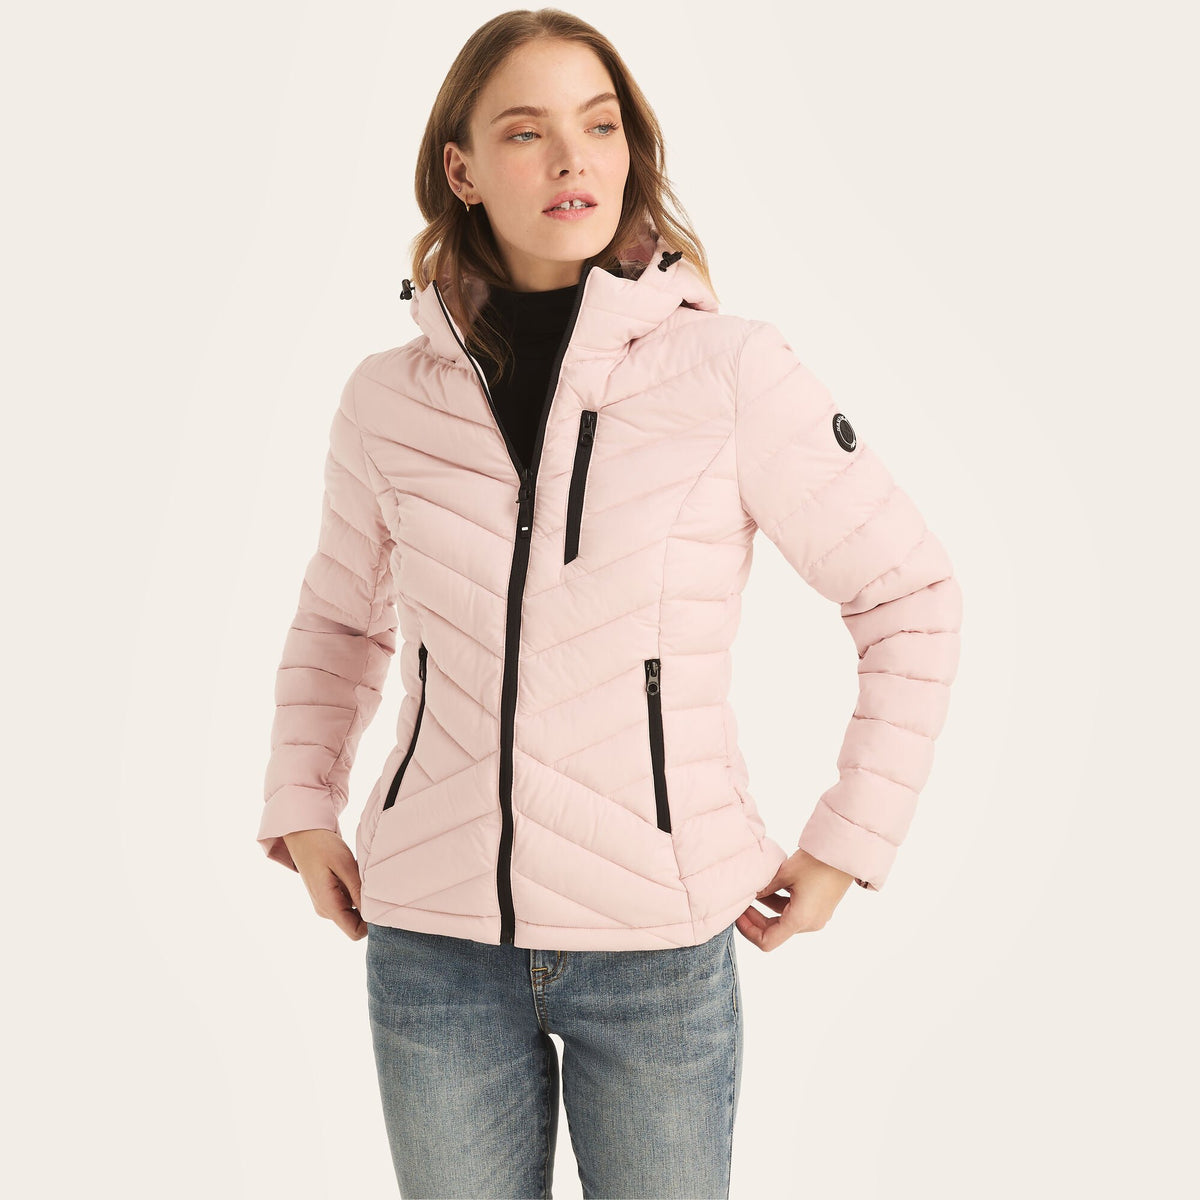 Nautica Women's Short Puffer Jacket With Hood Light Pink